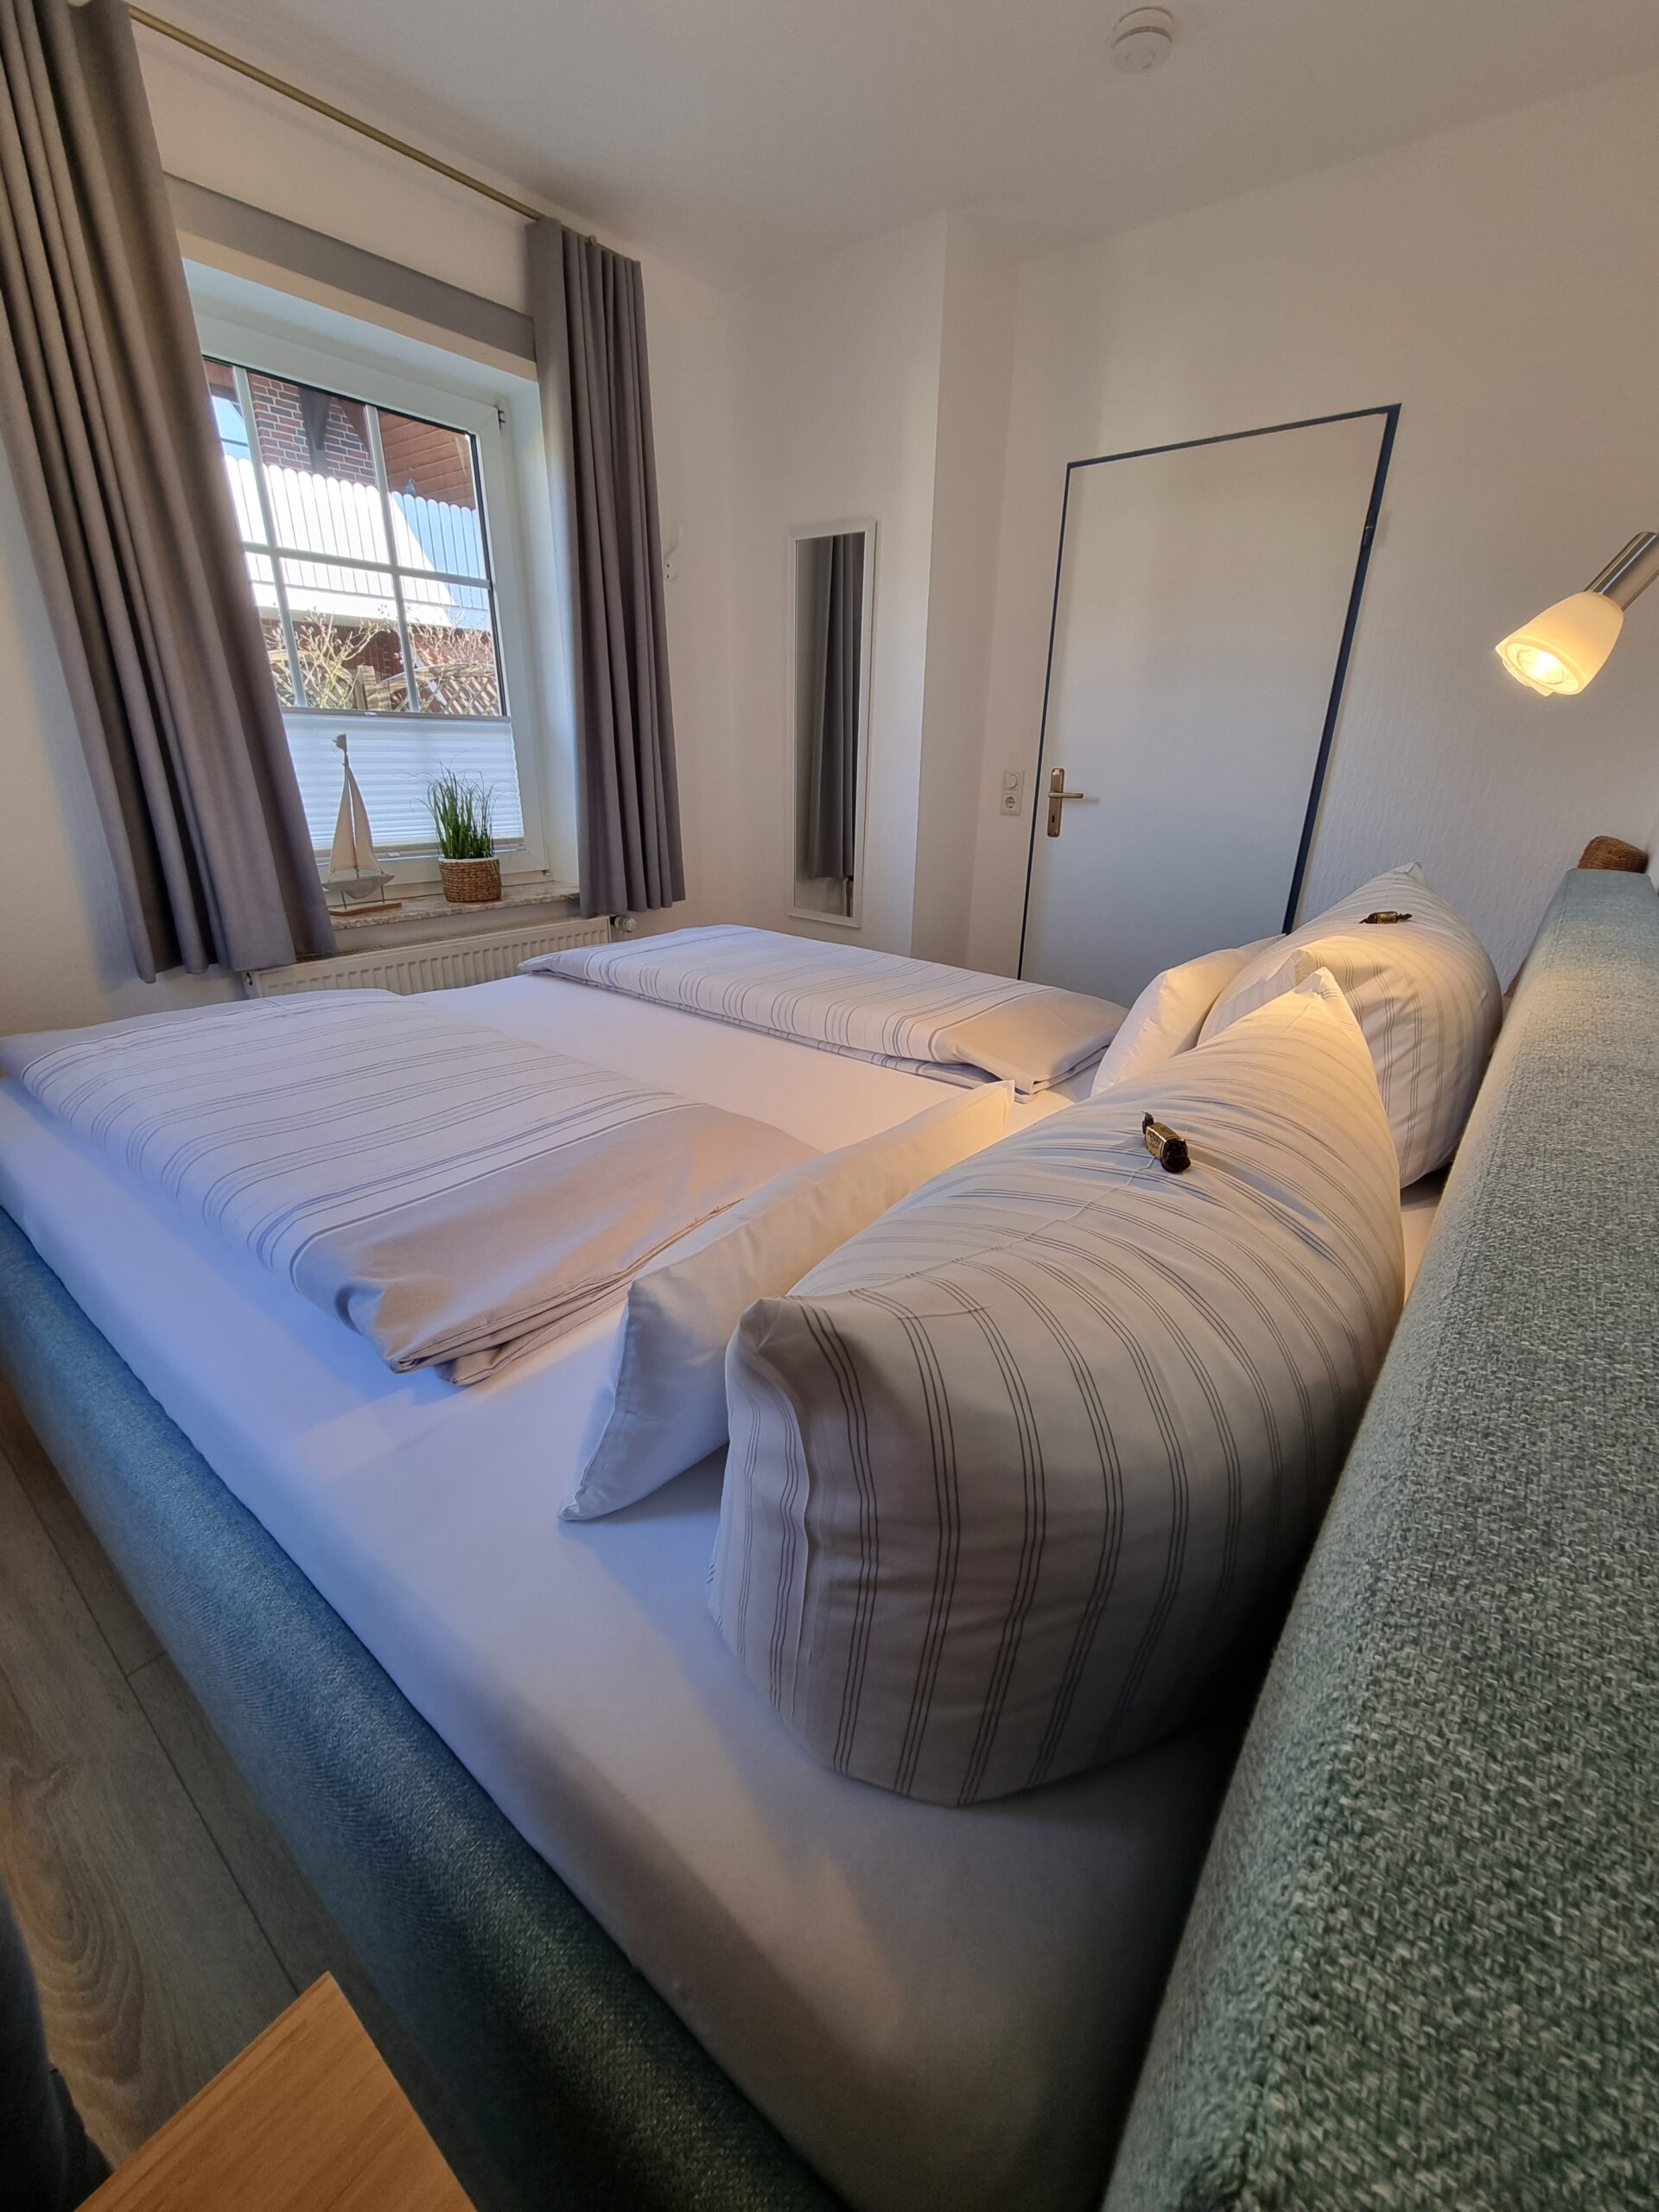 Doppelbettzimmer mit Sicht auf ein Fenster in einer Hotelsuite im Hotel Friesenhuus